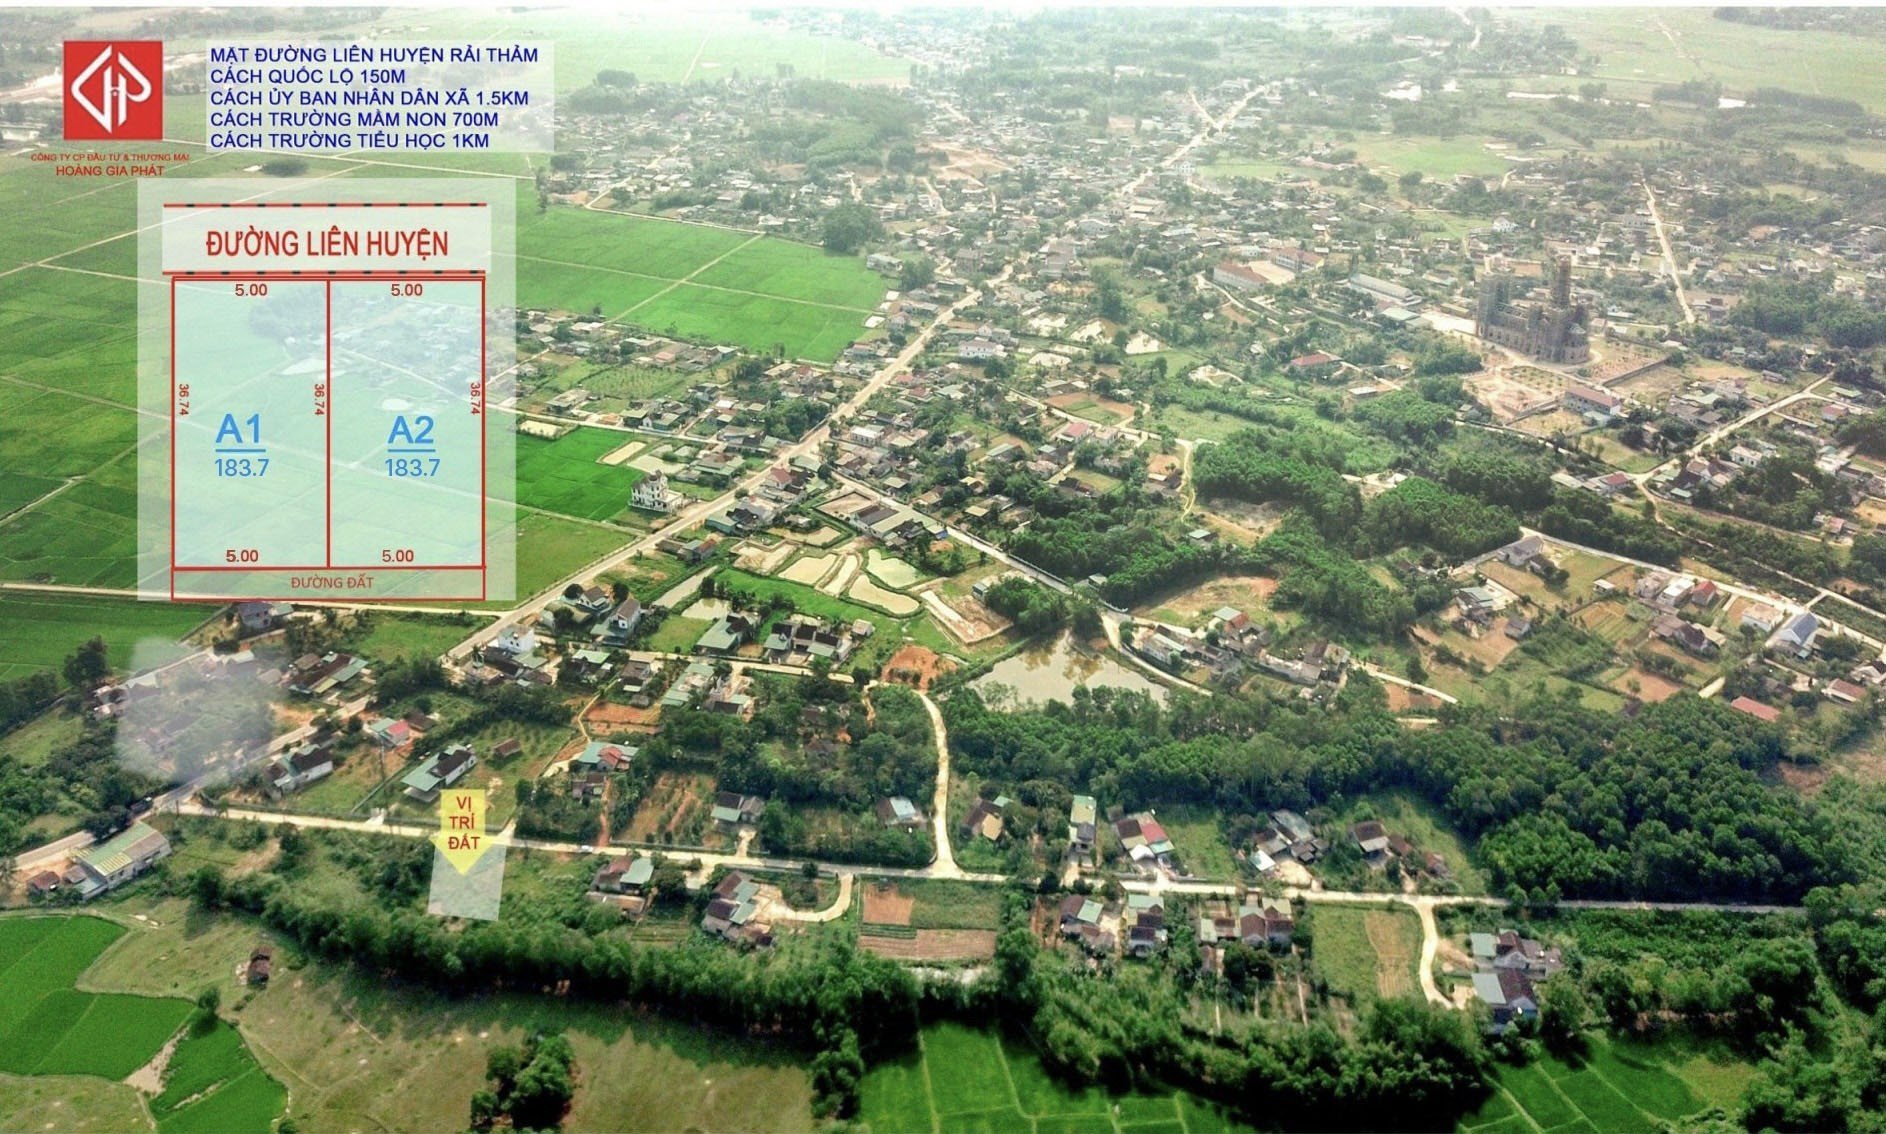 Cần bán Đất đường Xô Viết Nghệ Tĩnh, Xã Phú Lộc, Diện tích 183.7m², Giá Thương lượng 1